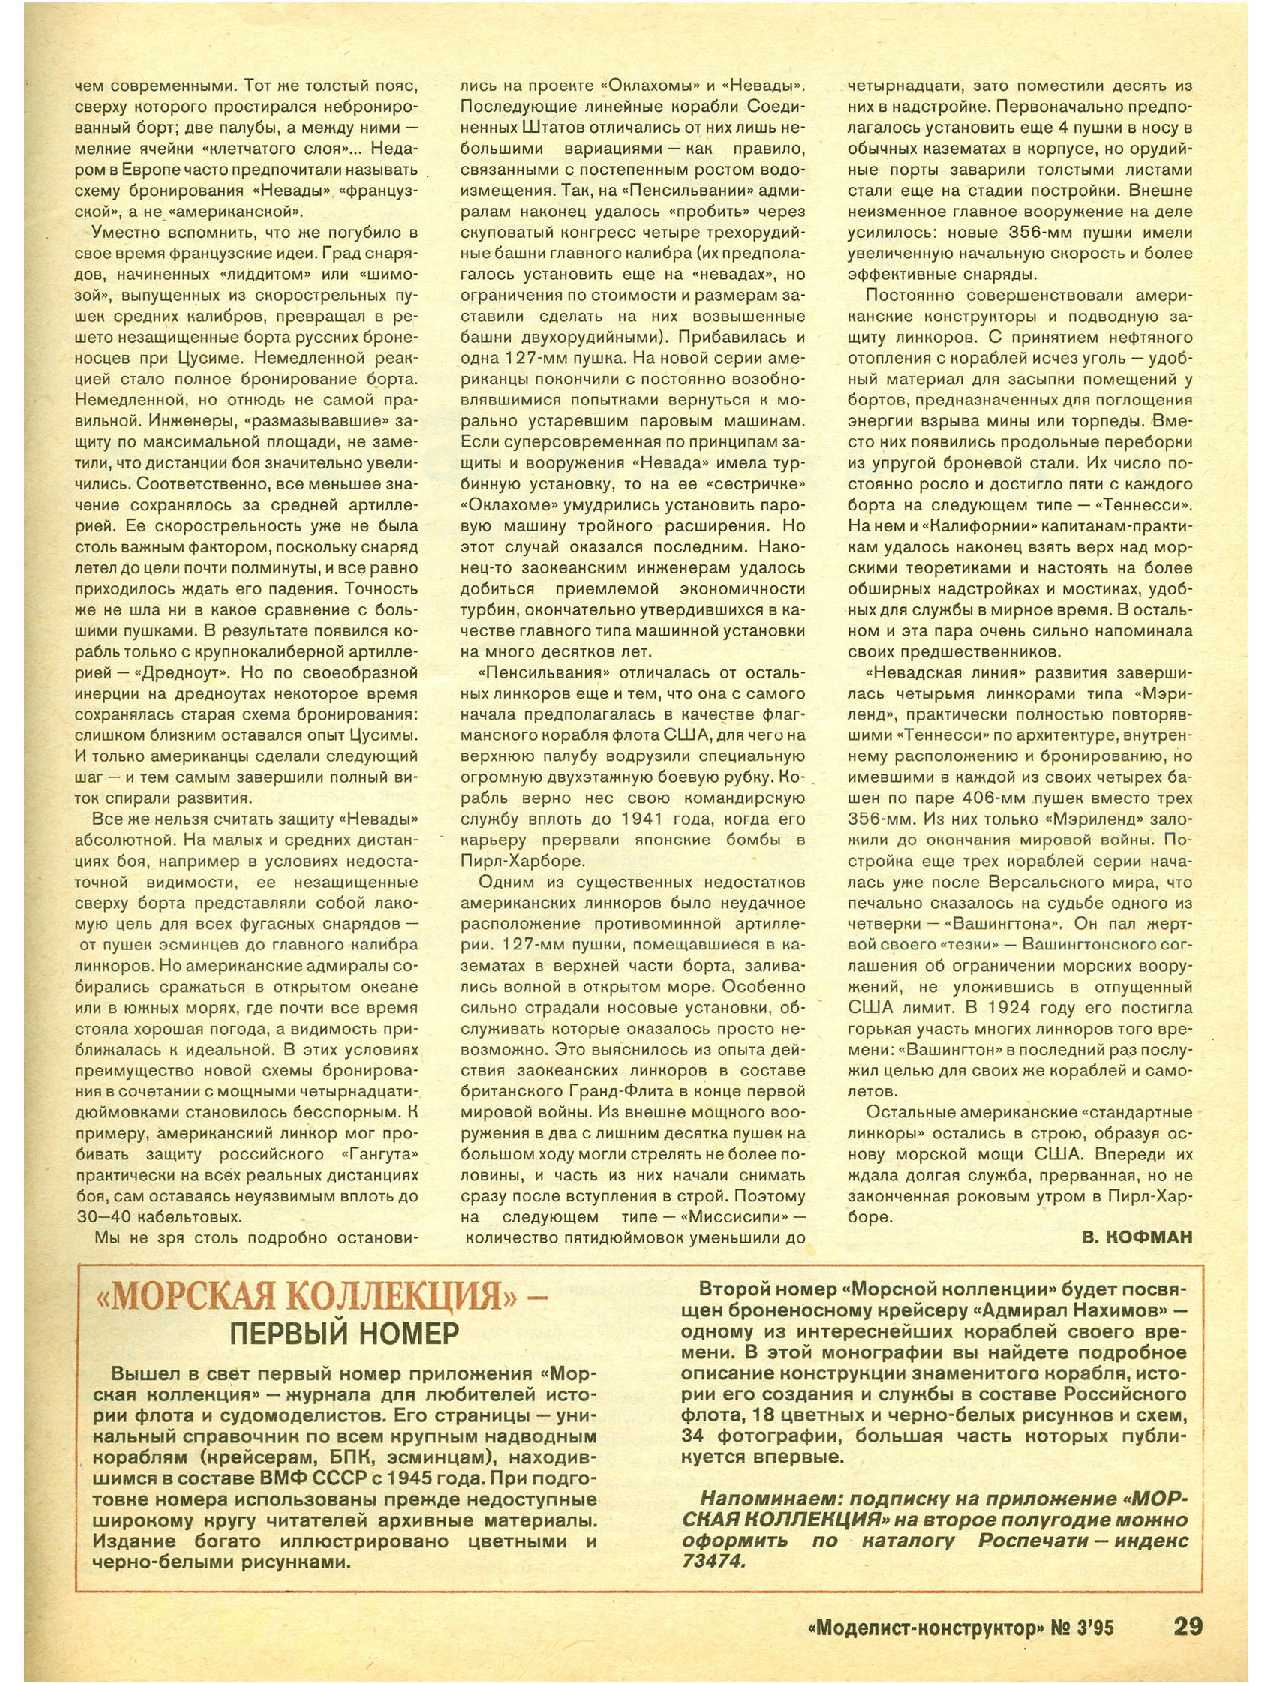 МК 3, 1995, 29 c.